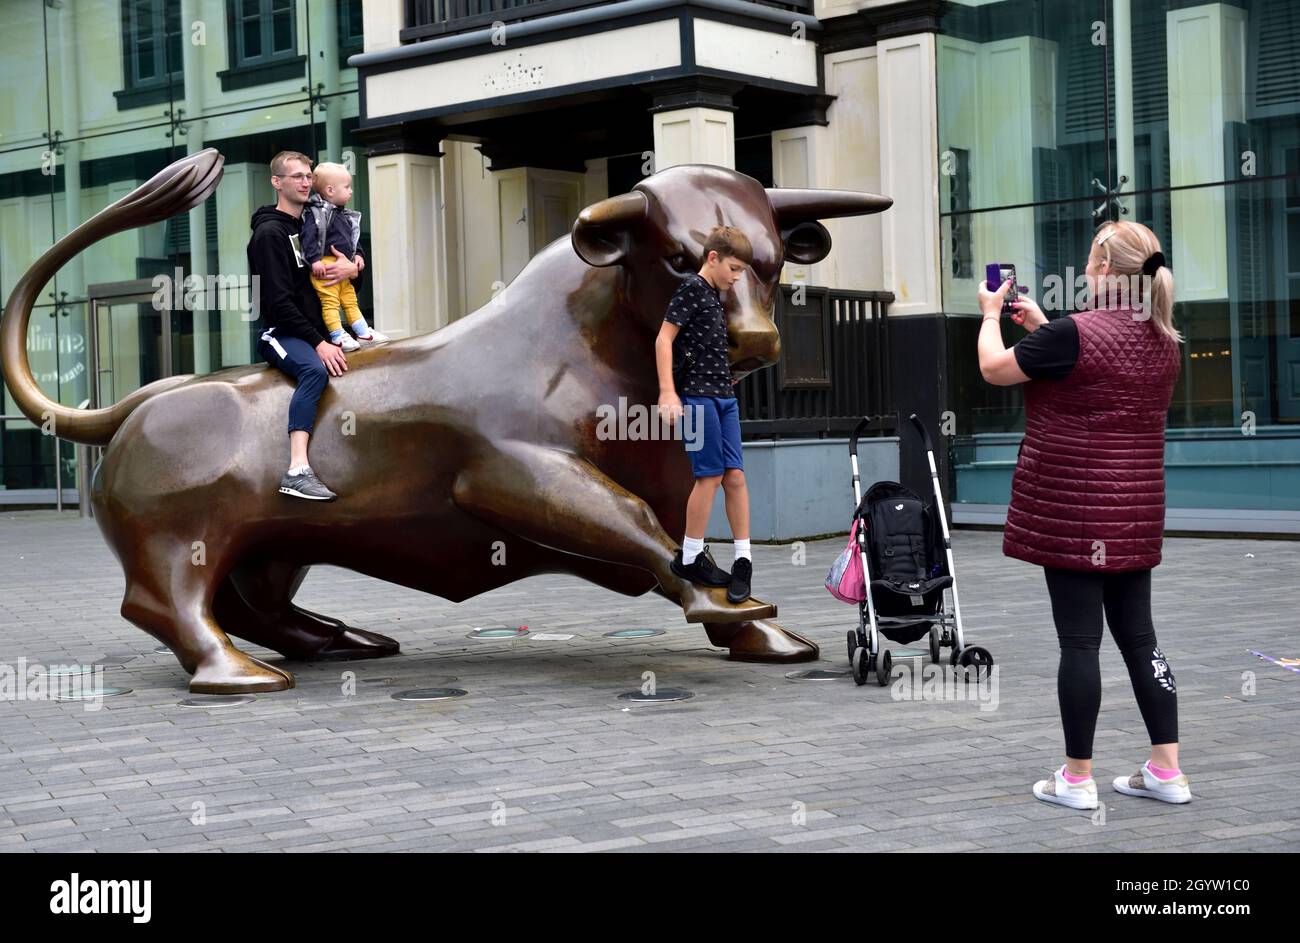 Sculpture de taureau à l'entrée du centre commercial Bullring avec escalade en famille sur la stature pour la photo Banque D'Images